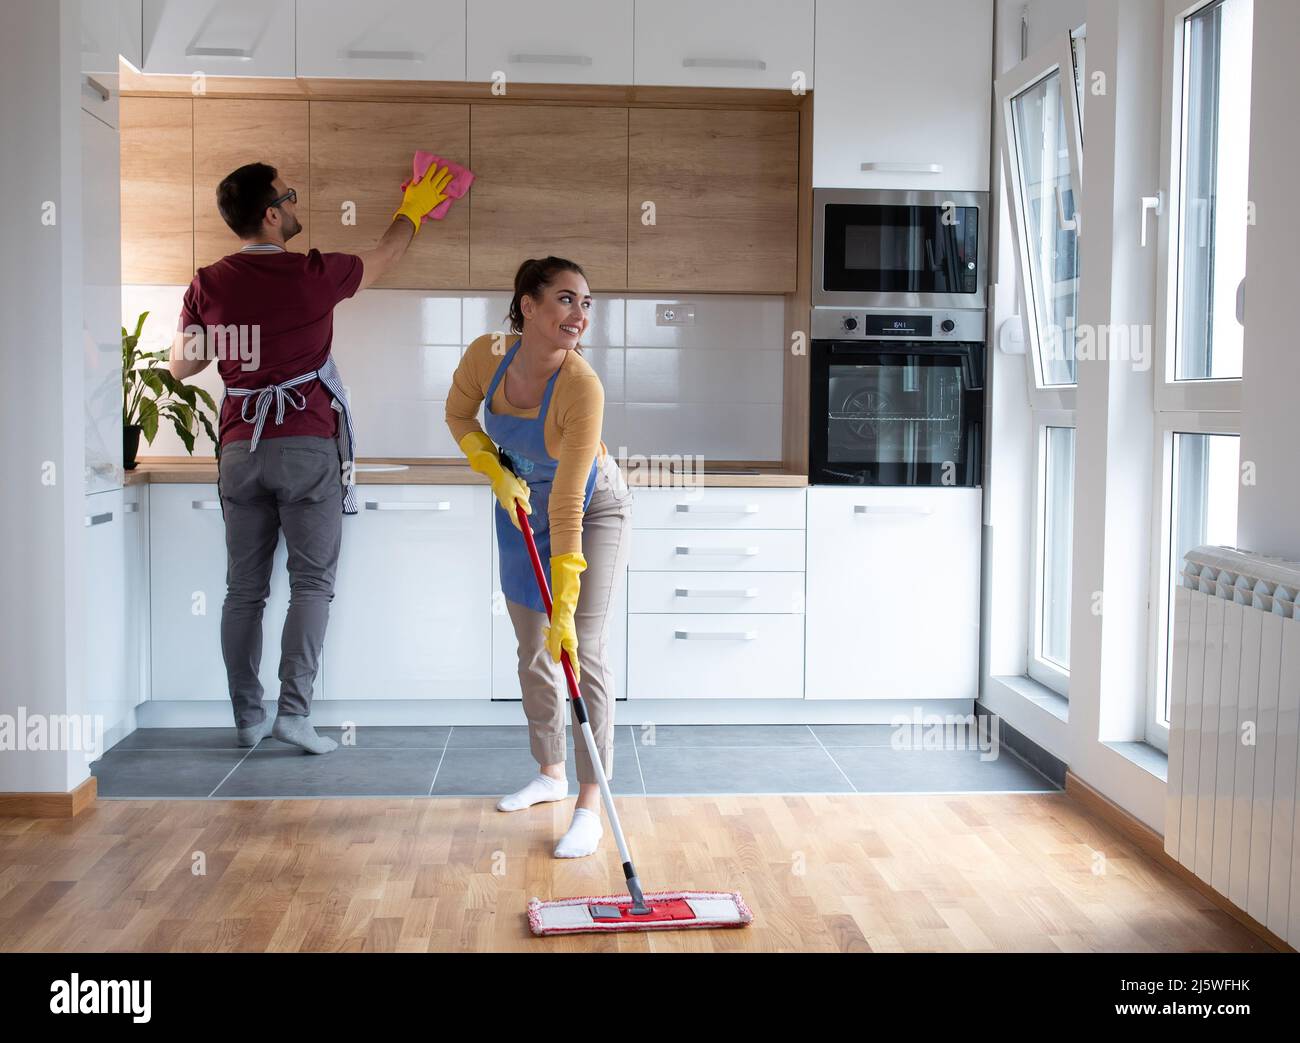 Ehepaar macht gemeinsam Hausarbeiten, während junge Frau mit einem Wischmann den Staub aus der Küche in ihrer Wohnung wischt. Stockfoto